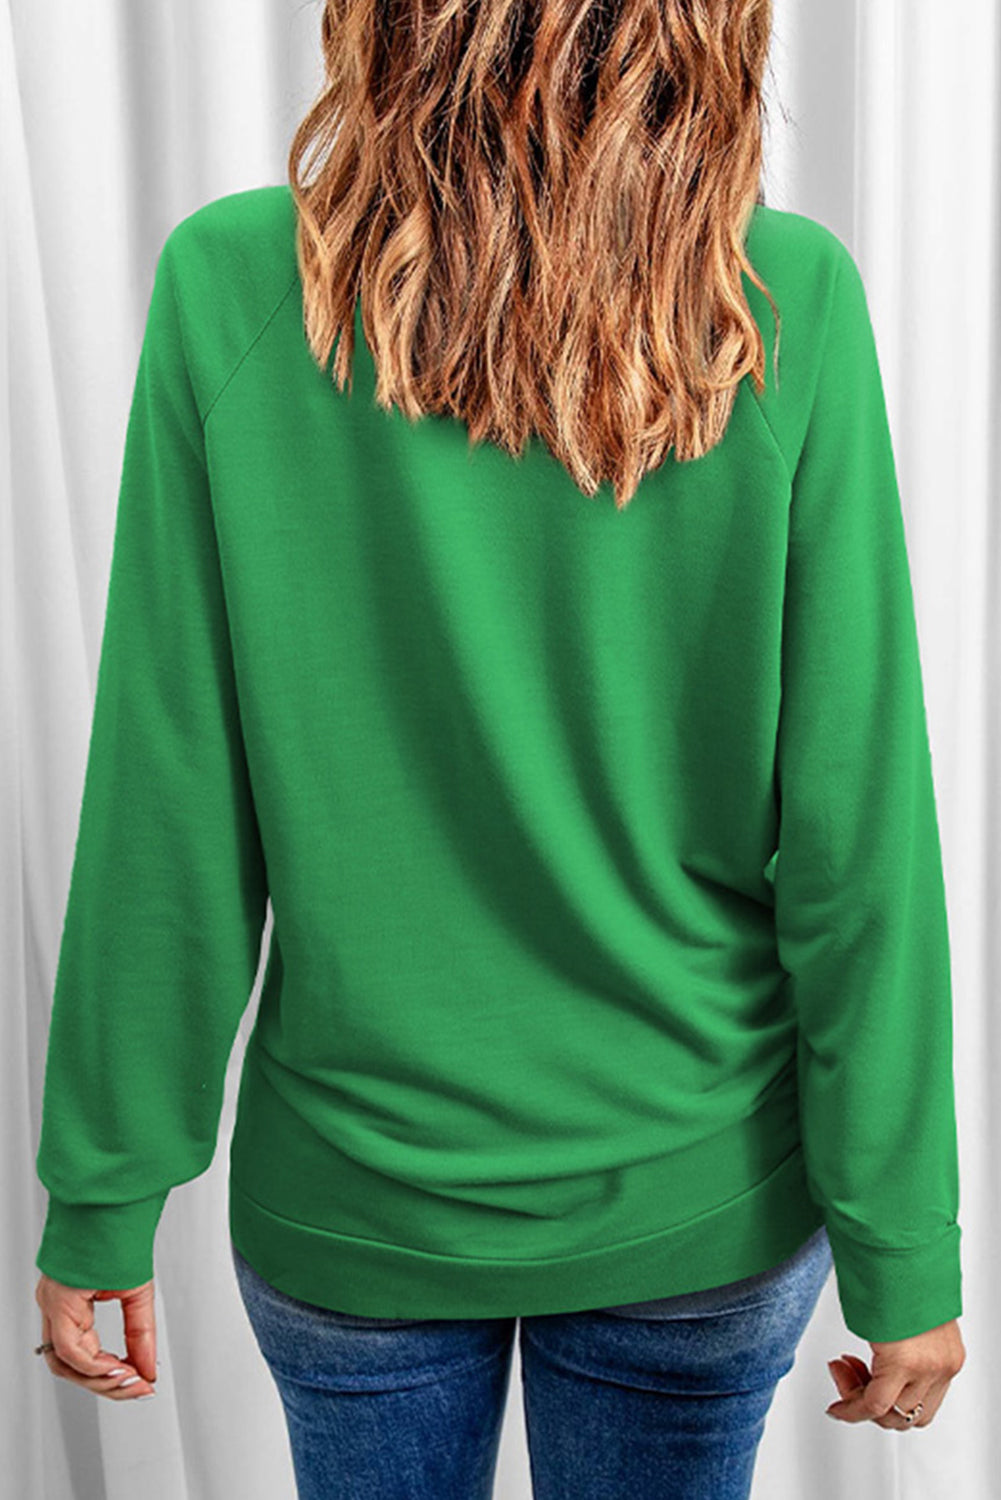 Green Merry & Bright Sequin Pattern Raglan Sleeve Sweatshirt Graphic Sweatshirts JT's Designer Fashion